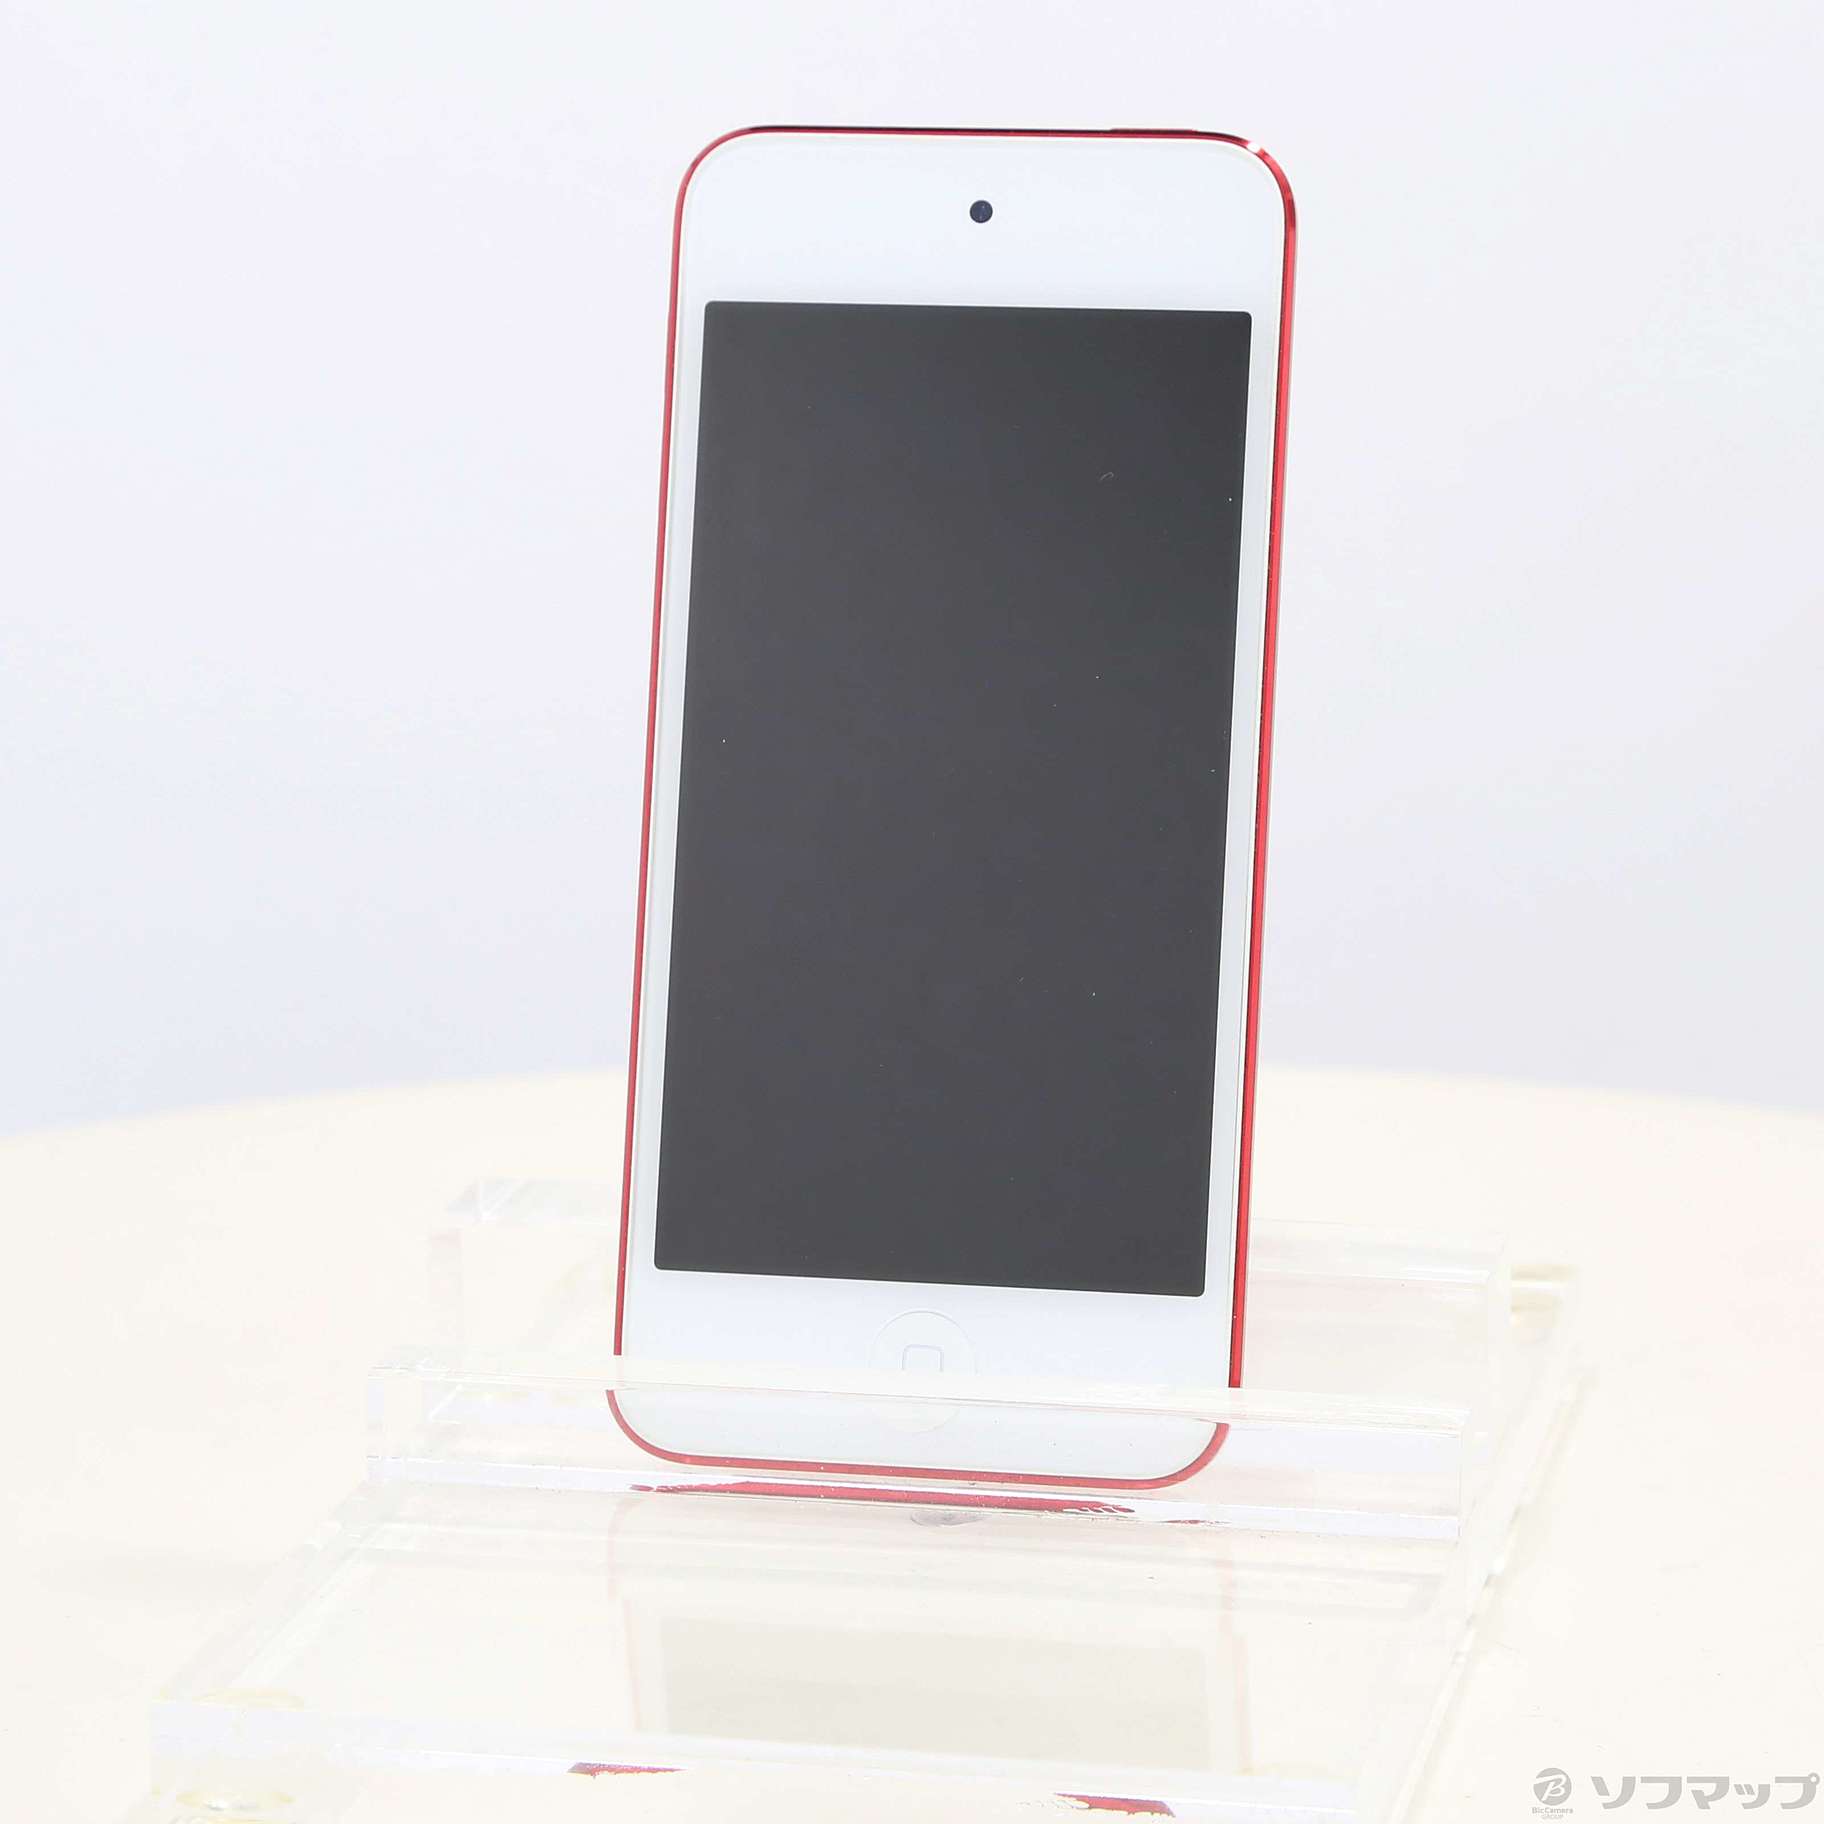 【ジャパン】新品 Apple ipod touch 第6世代 32GB Silver タブレット